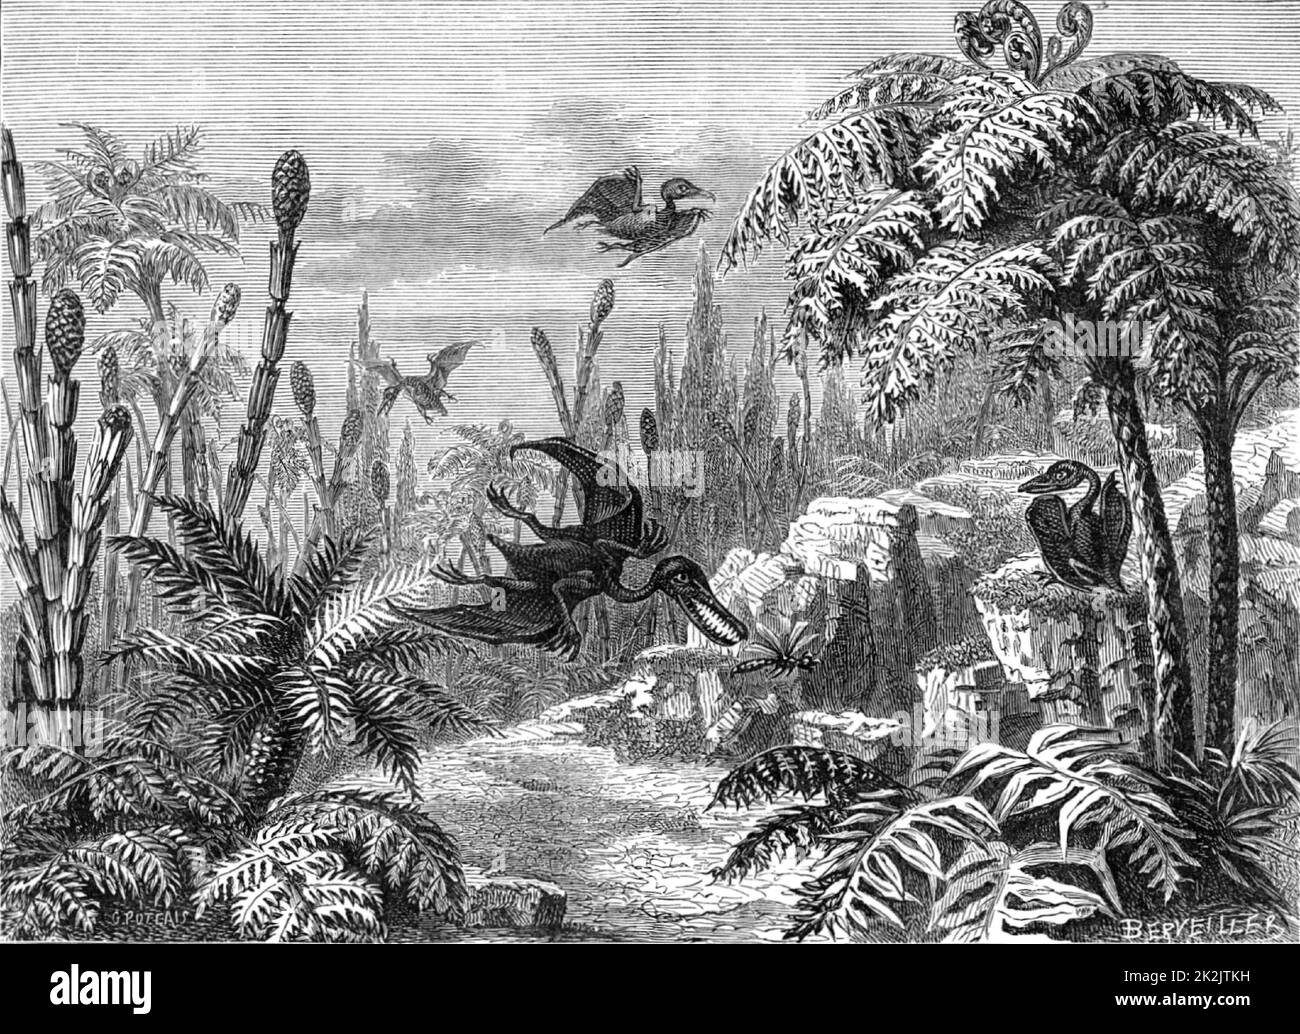 Szene während der Lias-Zeit, die Pterodaktyle, eine Libelle, Equisetums und Baumfarne zeigt. Aus 'The Popular Encyclopedia' (London, 1888). Gravur. Stockfoto